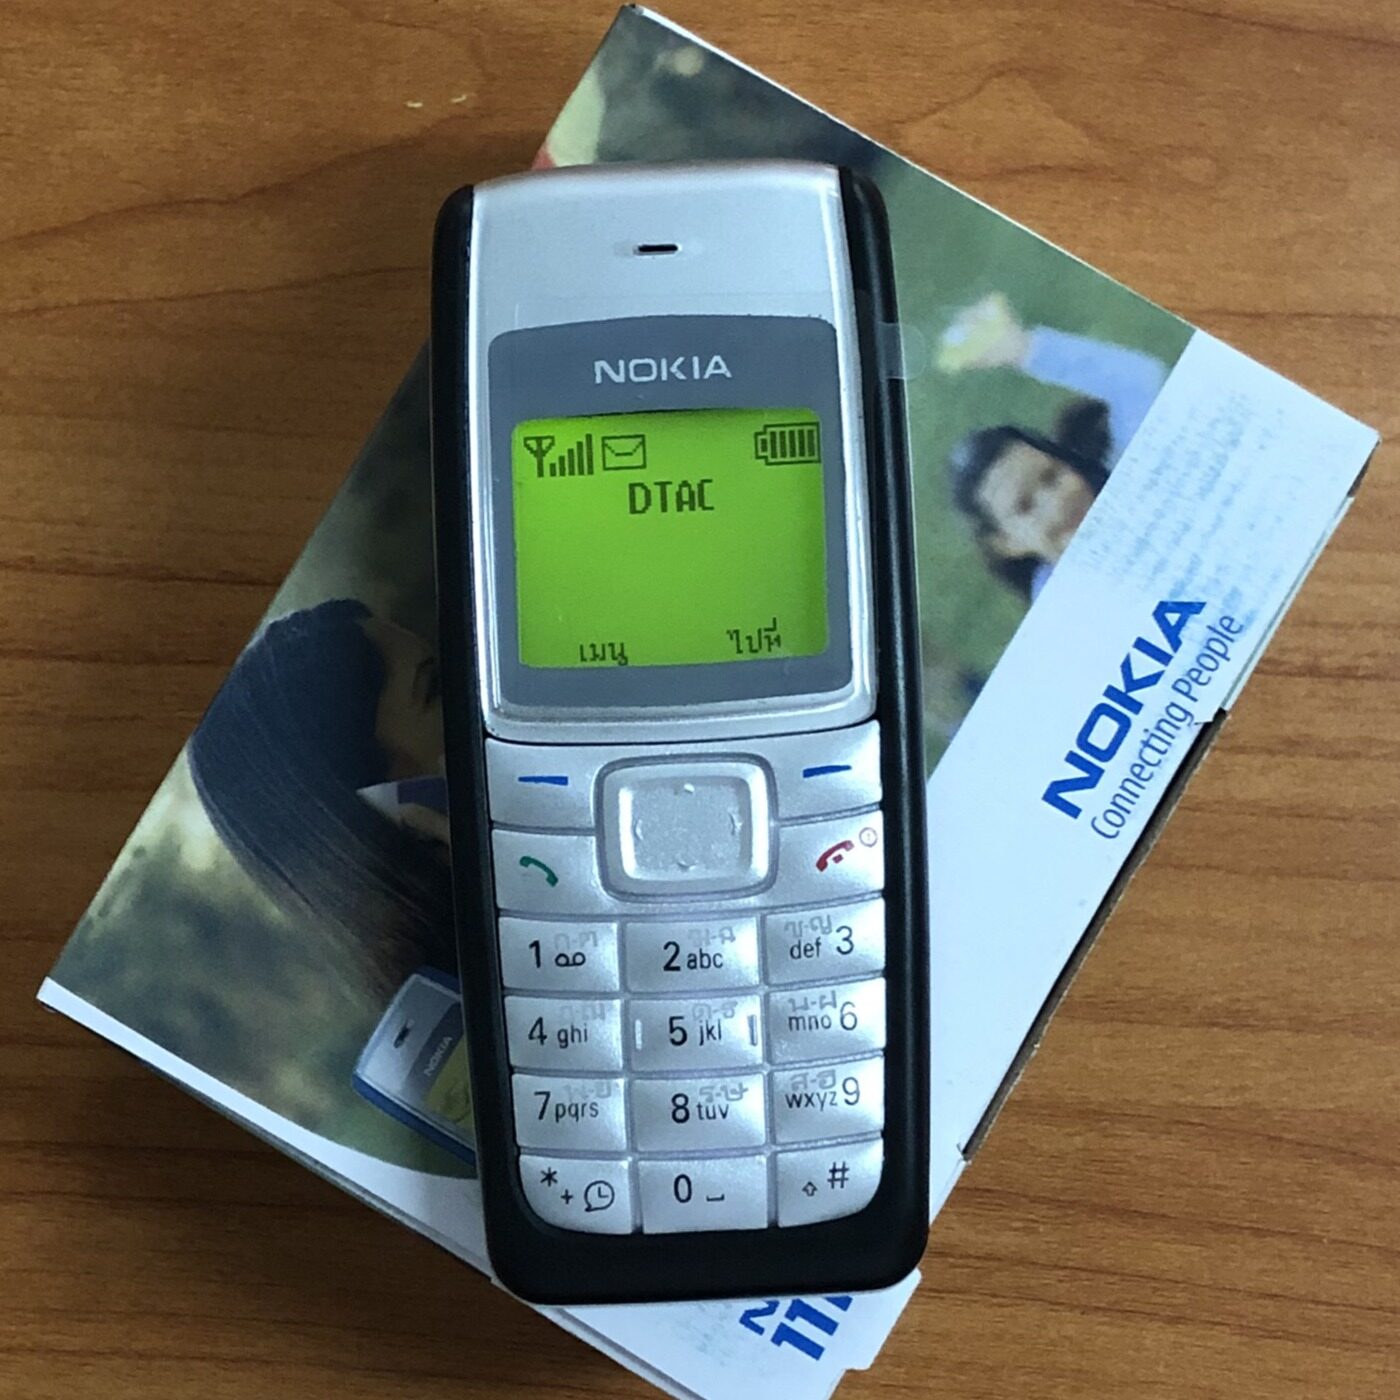 Nokia 1110i โนเกีย ปุ่มกดมือถือ เครื่องแท้ ตัวเลขใหญ่ สัญญาณดีมาก ลำโพงเสียงดัง ใส่ได้AIS DTAC TRUE ซิม4G